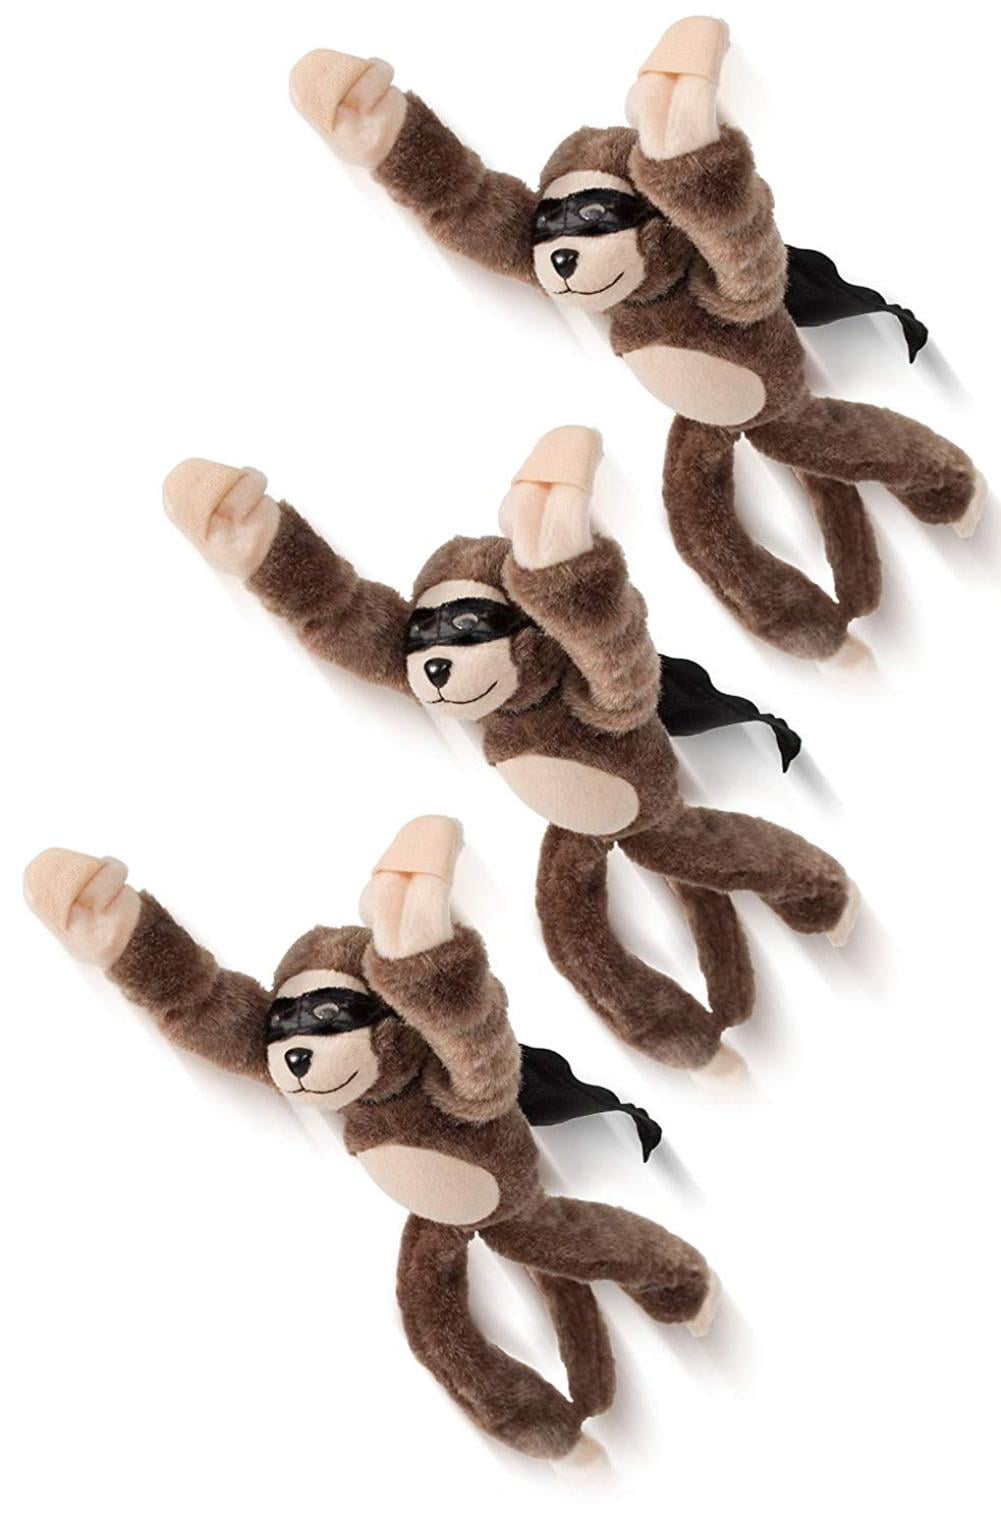 howler monkey stuffed animal